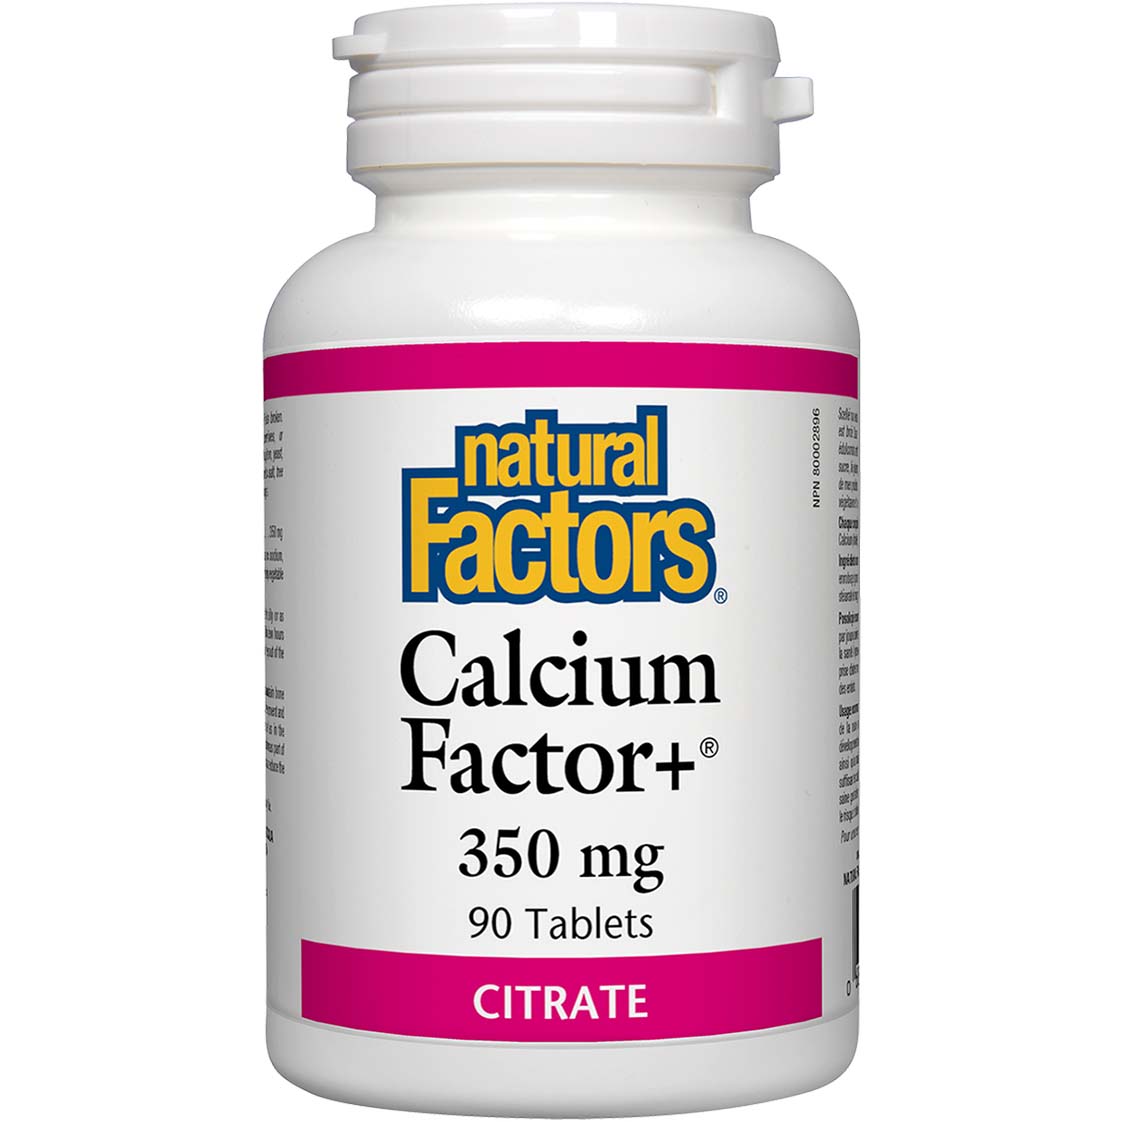 Natural Factors Calcium Factor, 350 mg, 60 Tablets